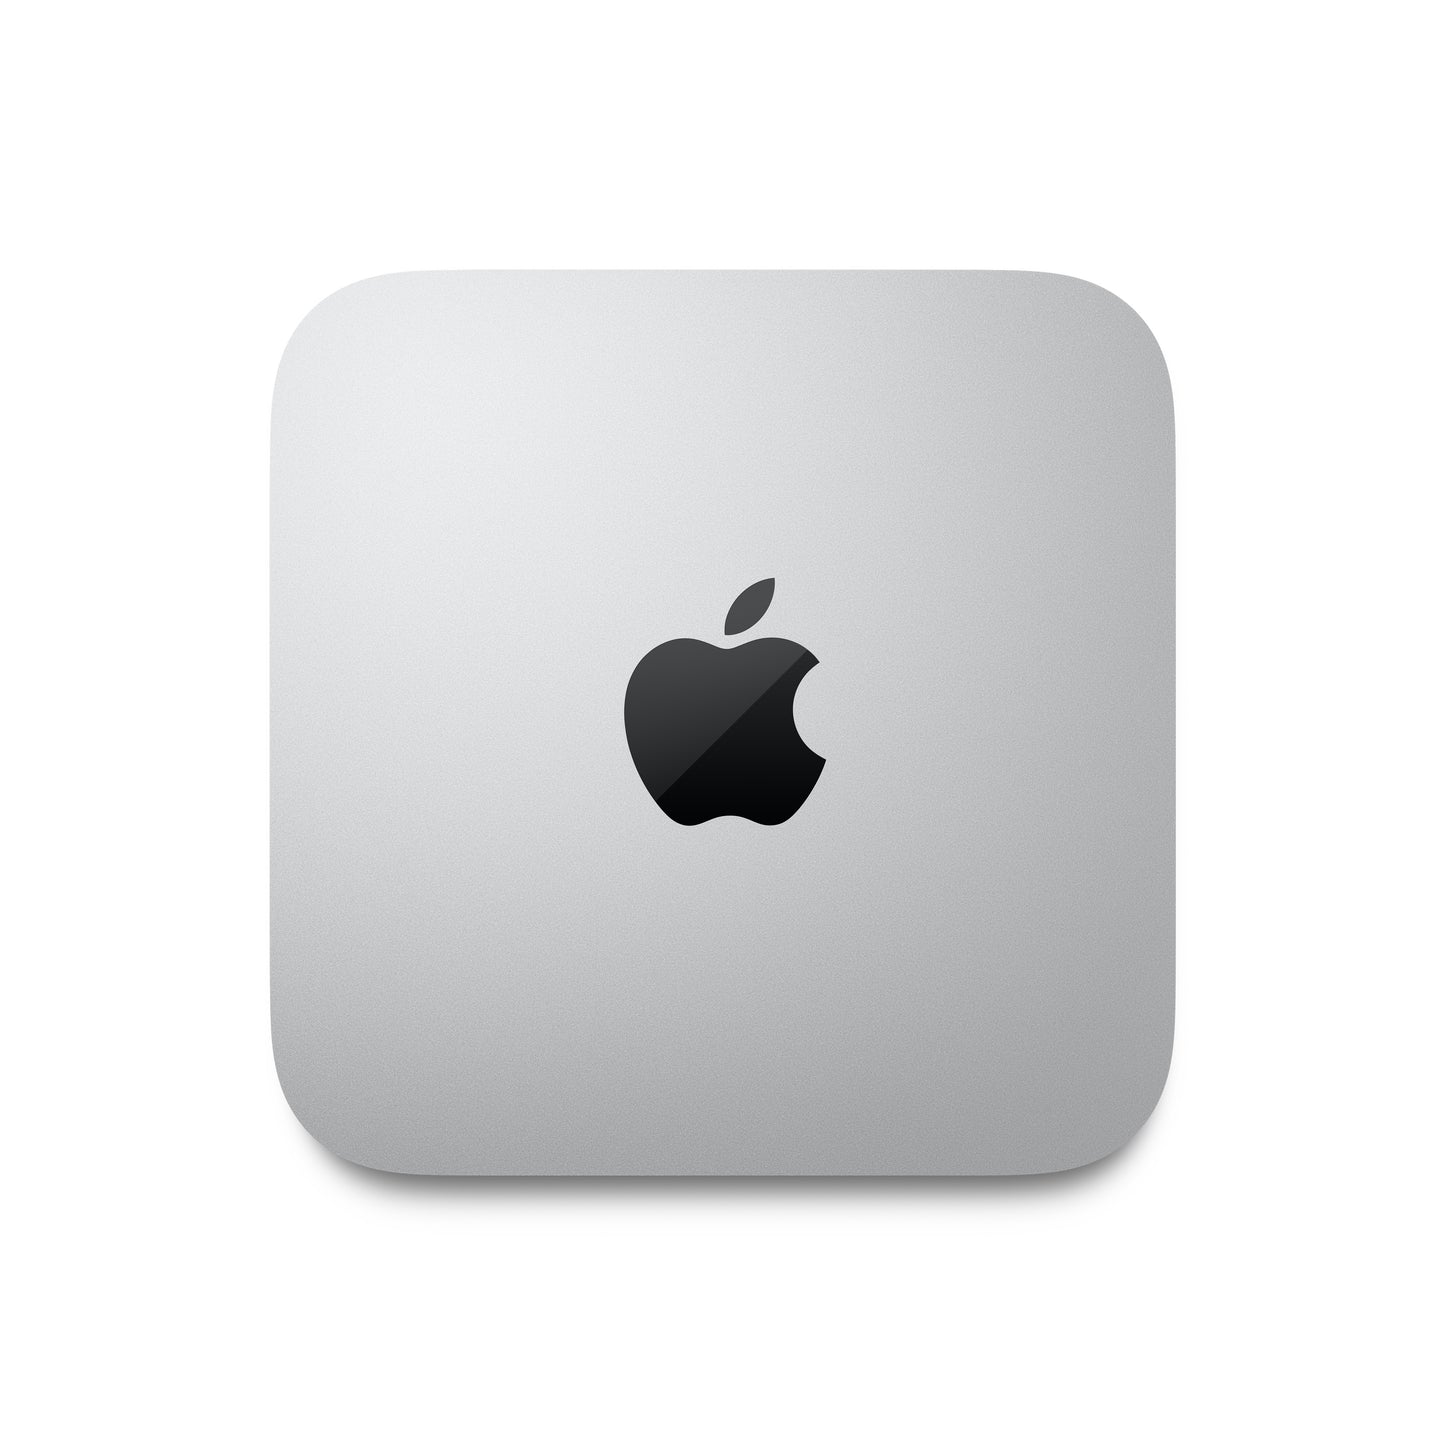 Mac mini M1 Apple M1 chip with 8_core CPU and 8_core GPU, 512GB SSD